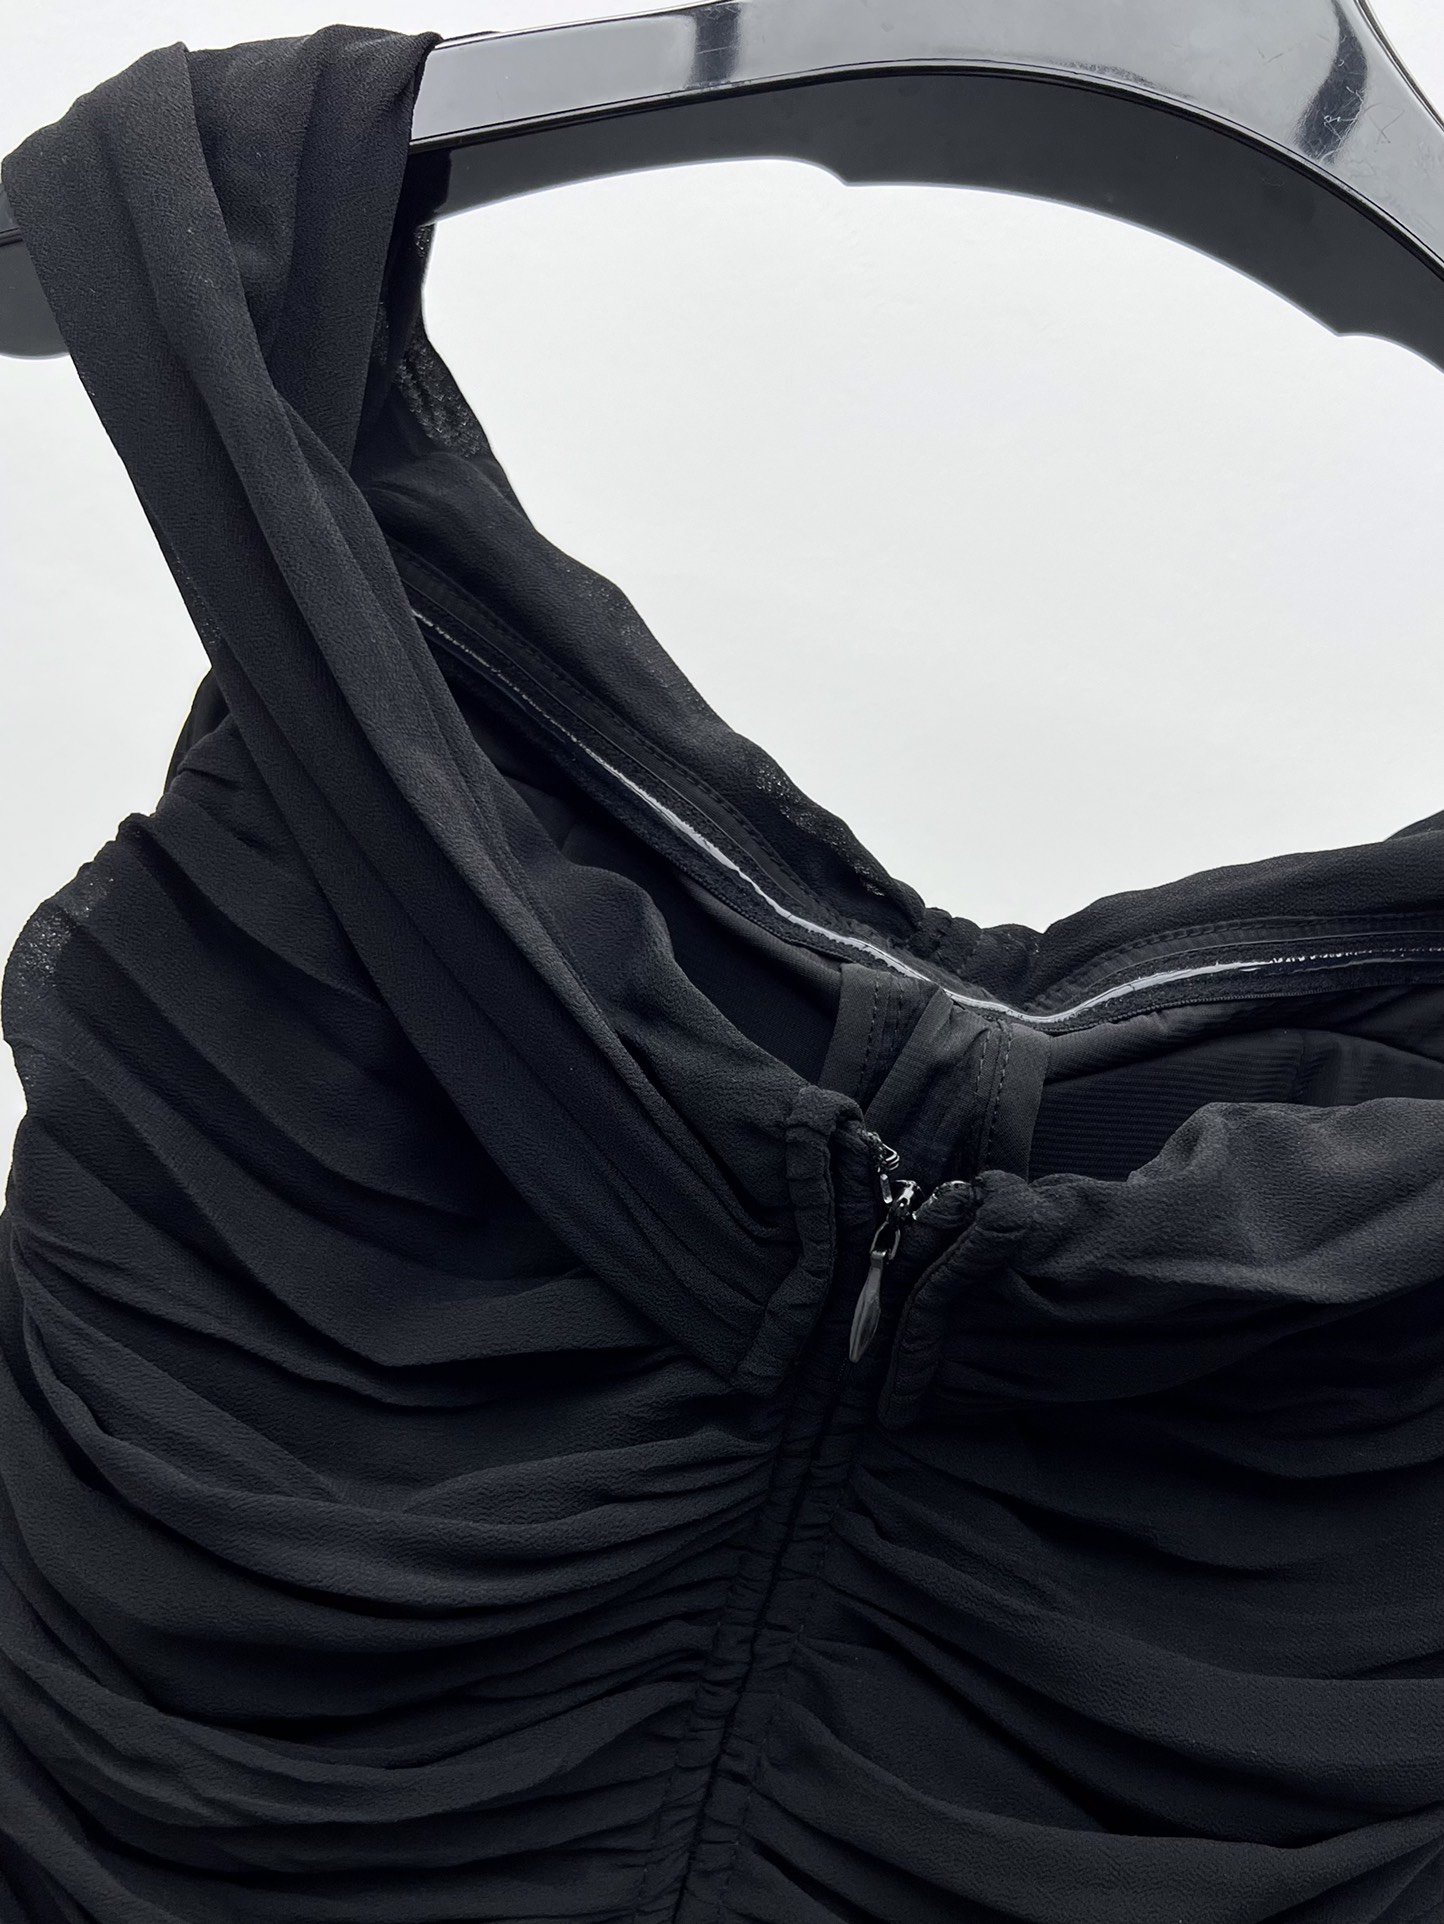 Плаття, Сукня міні чорне (шовк 100%) фото 6